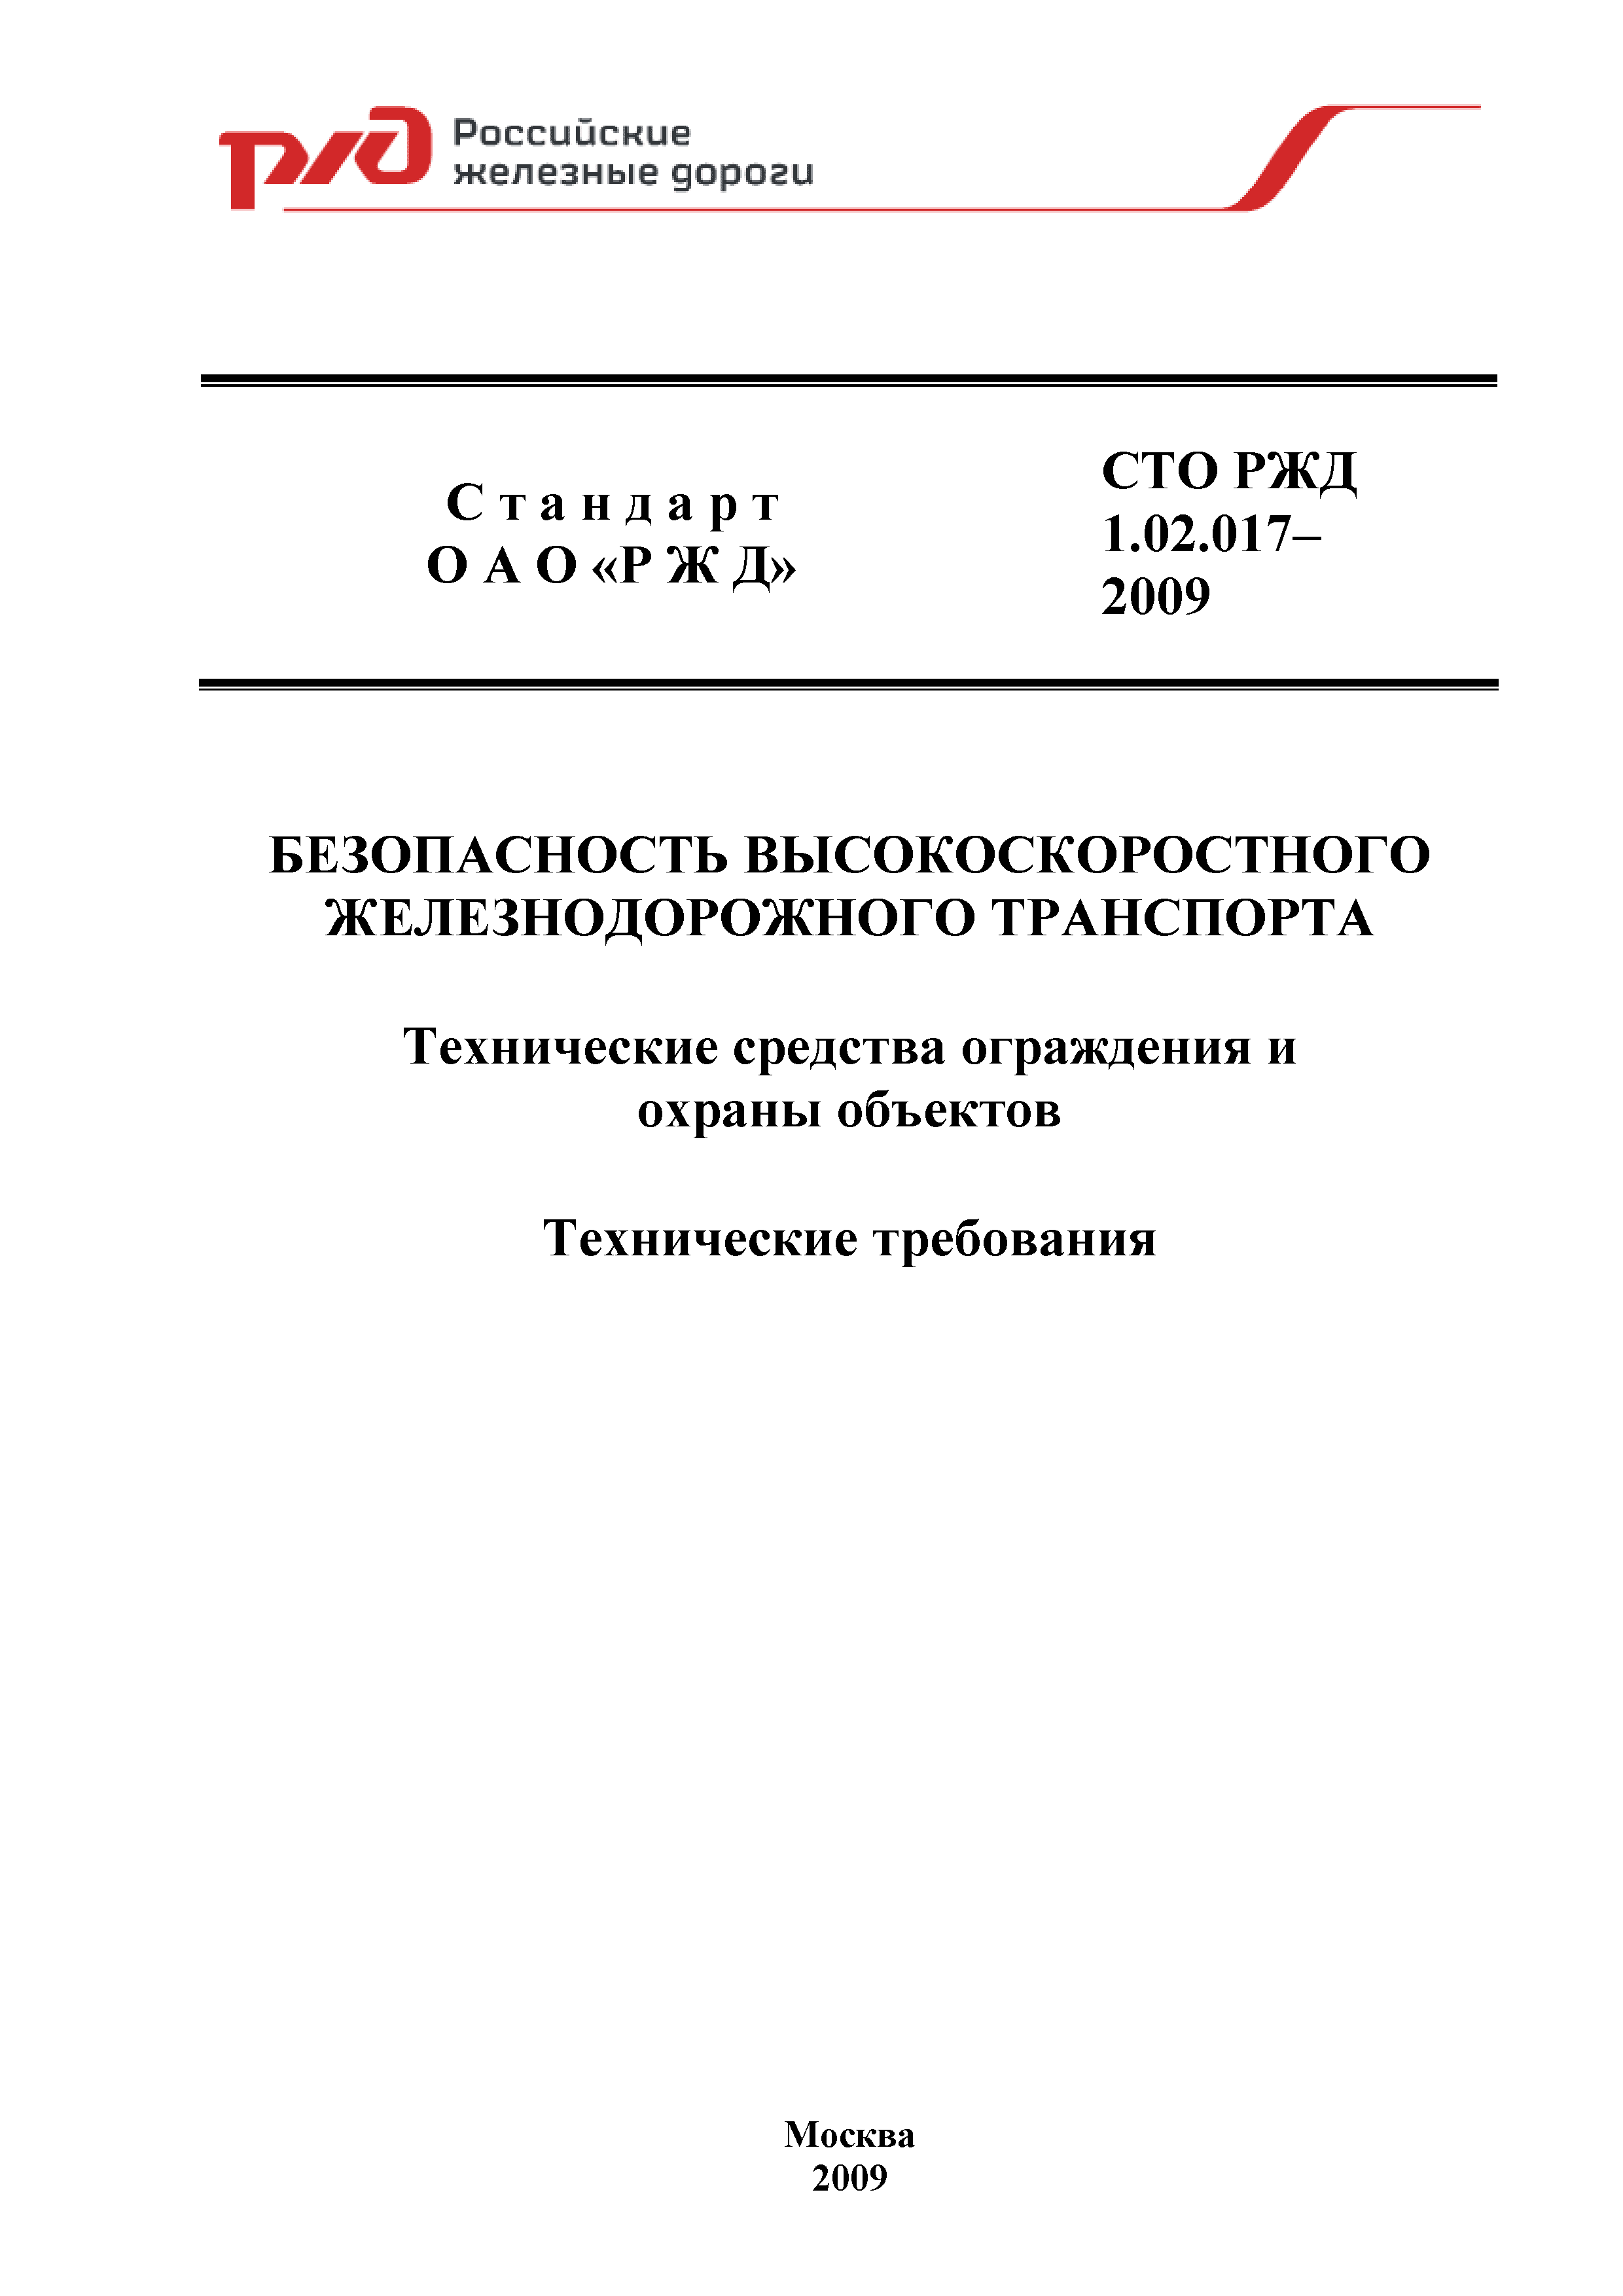 СТО РЖД 1.02.017-2009